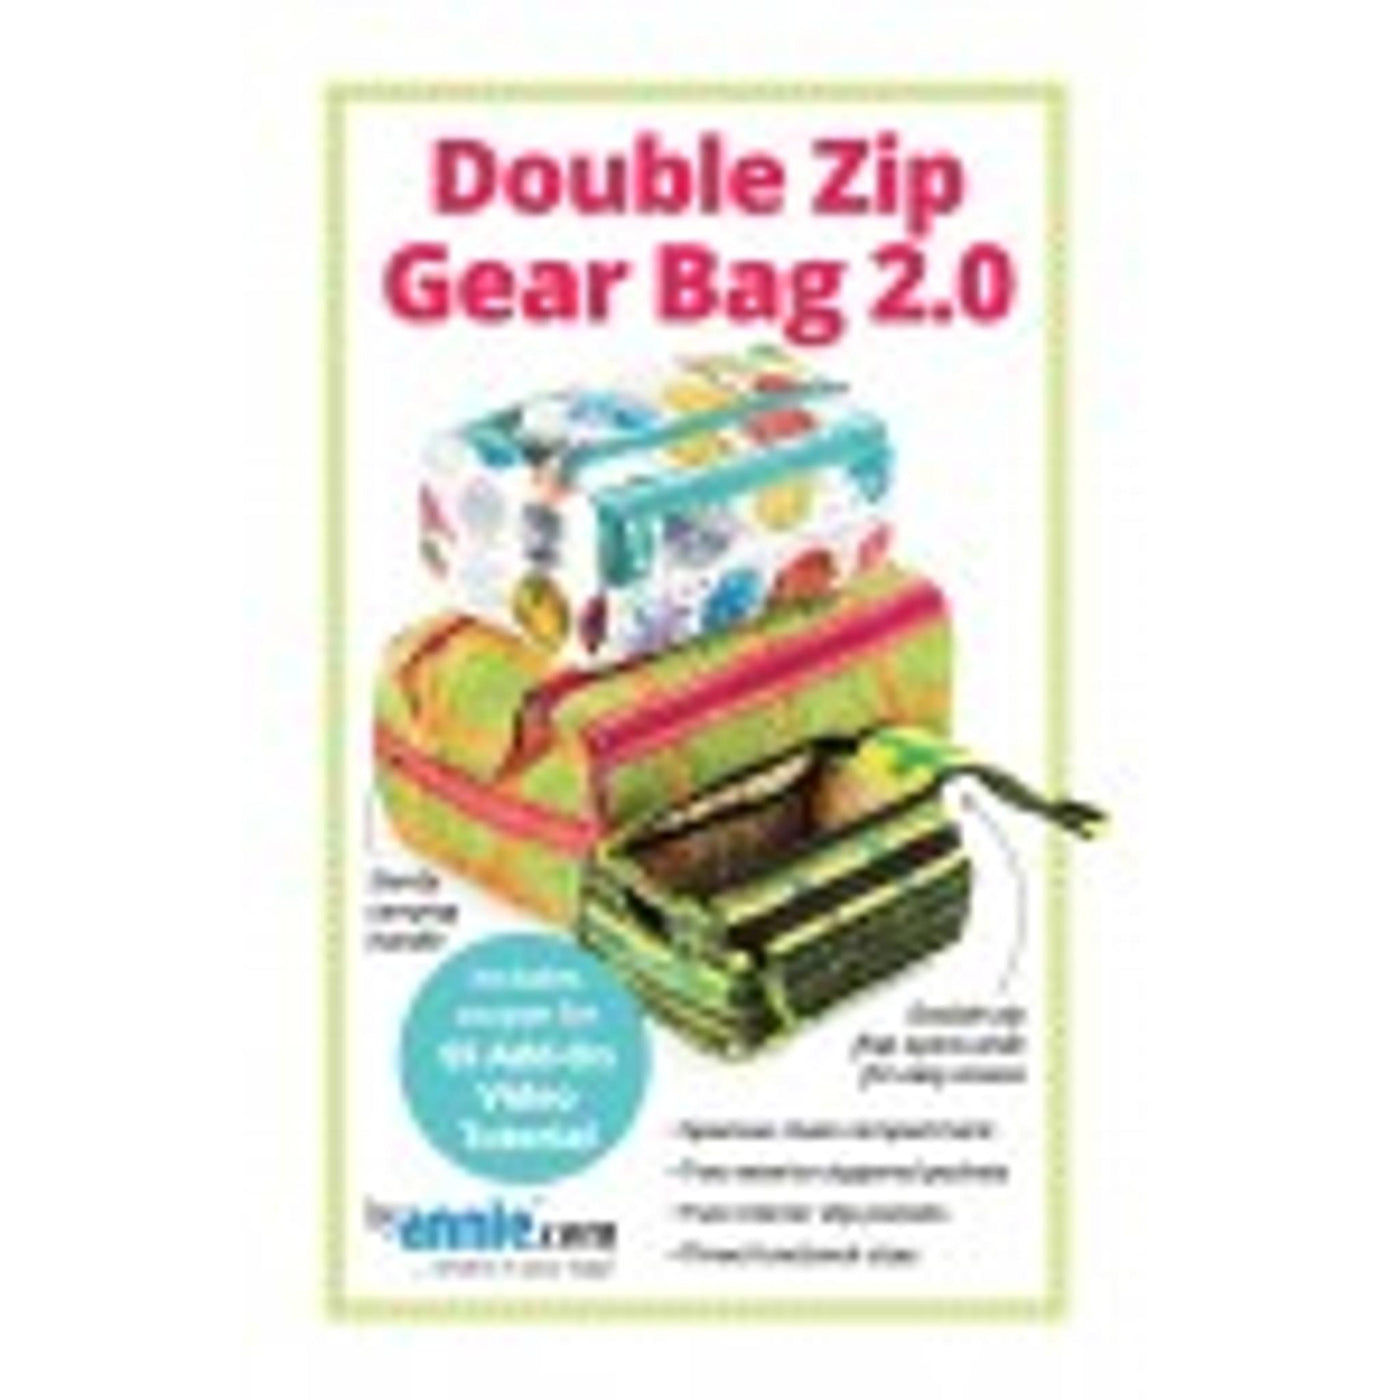 Double Zip Gear Bag